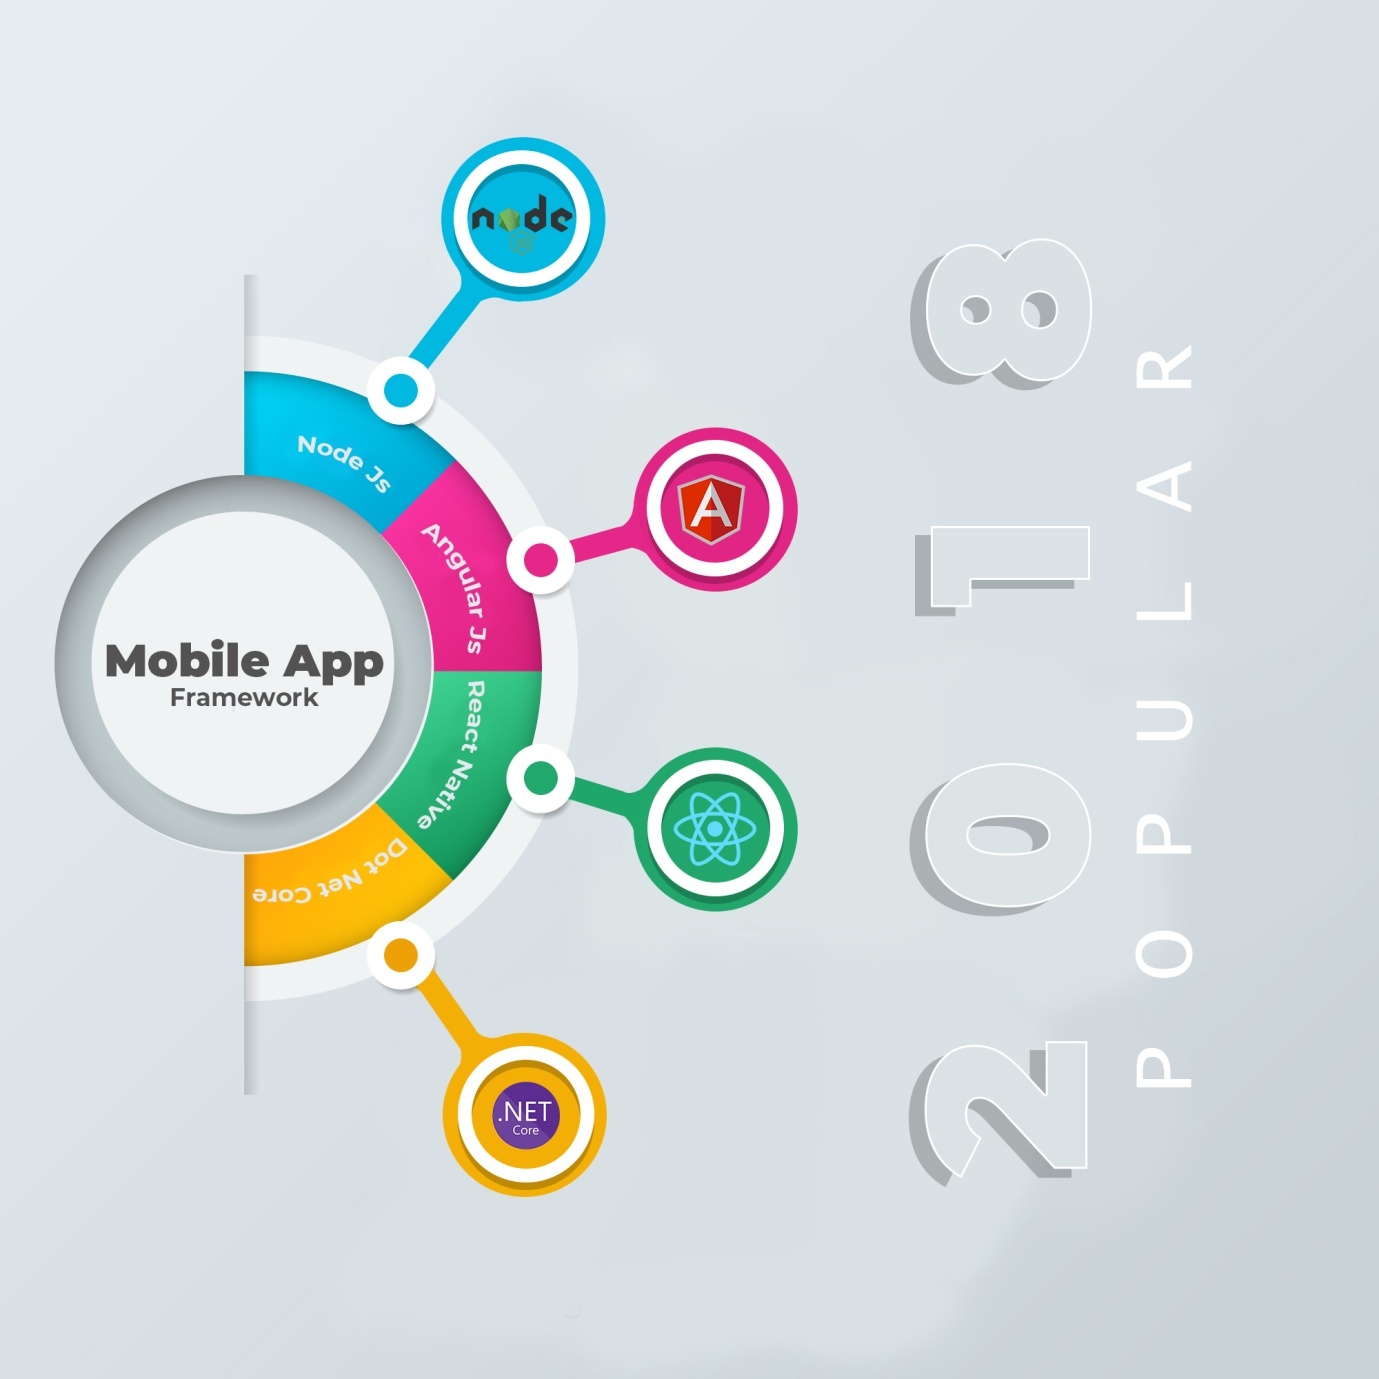 Mobile App Framework